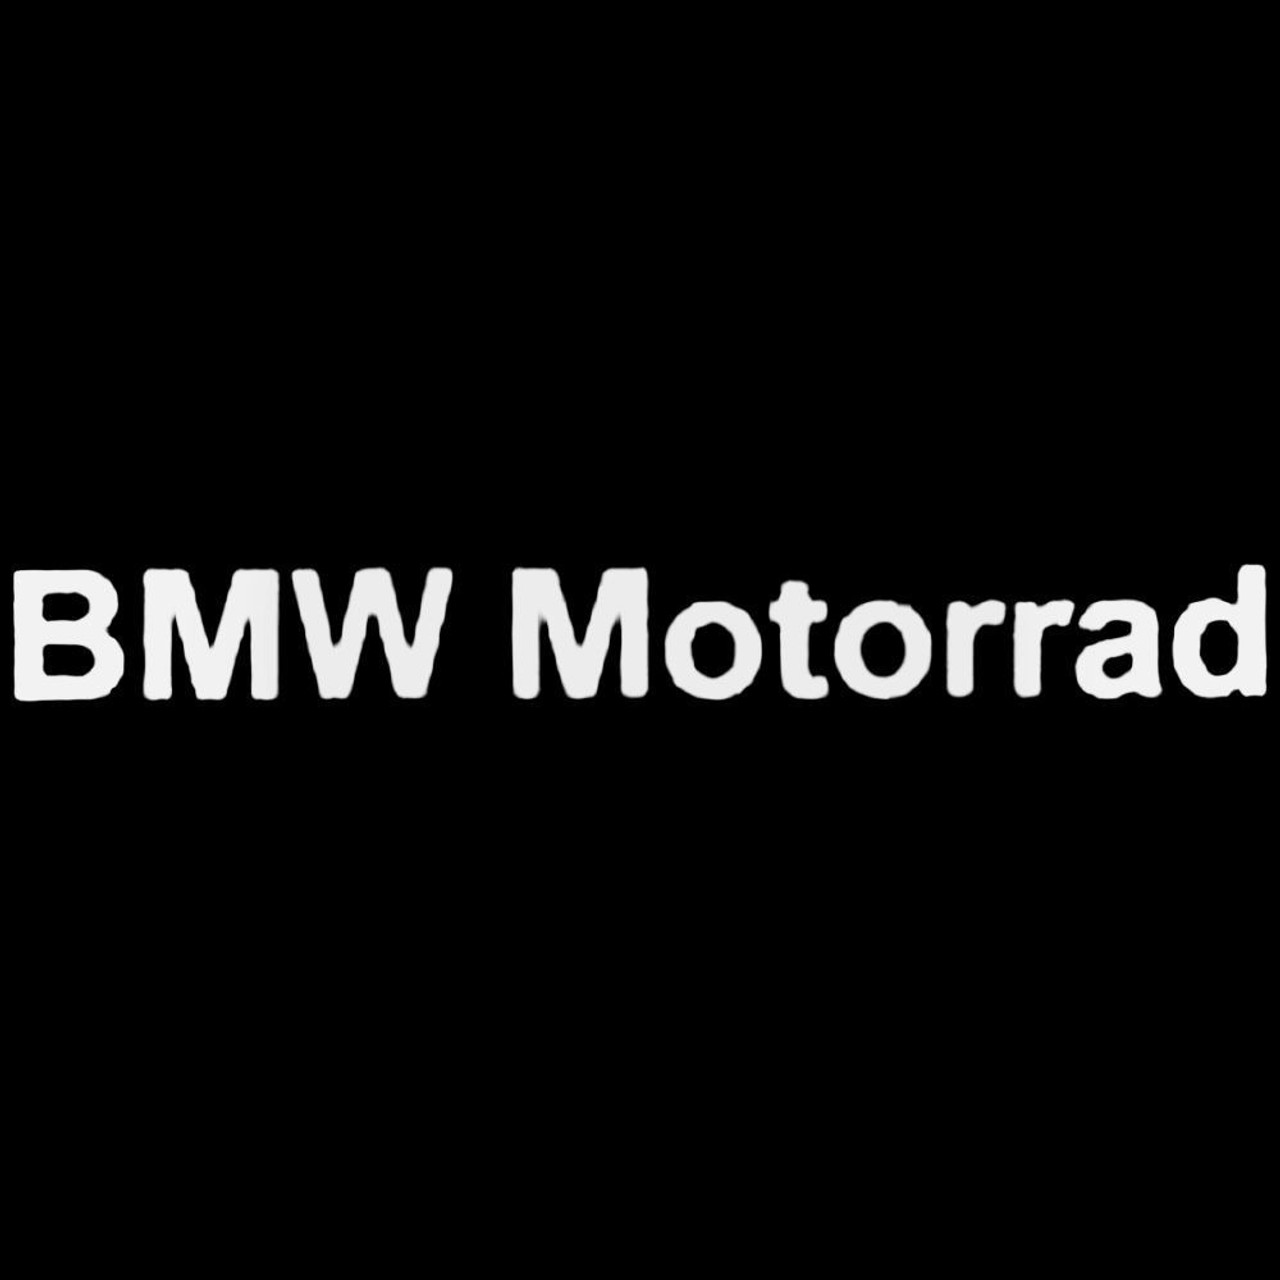 Bmw Motorrad Sticker